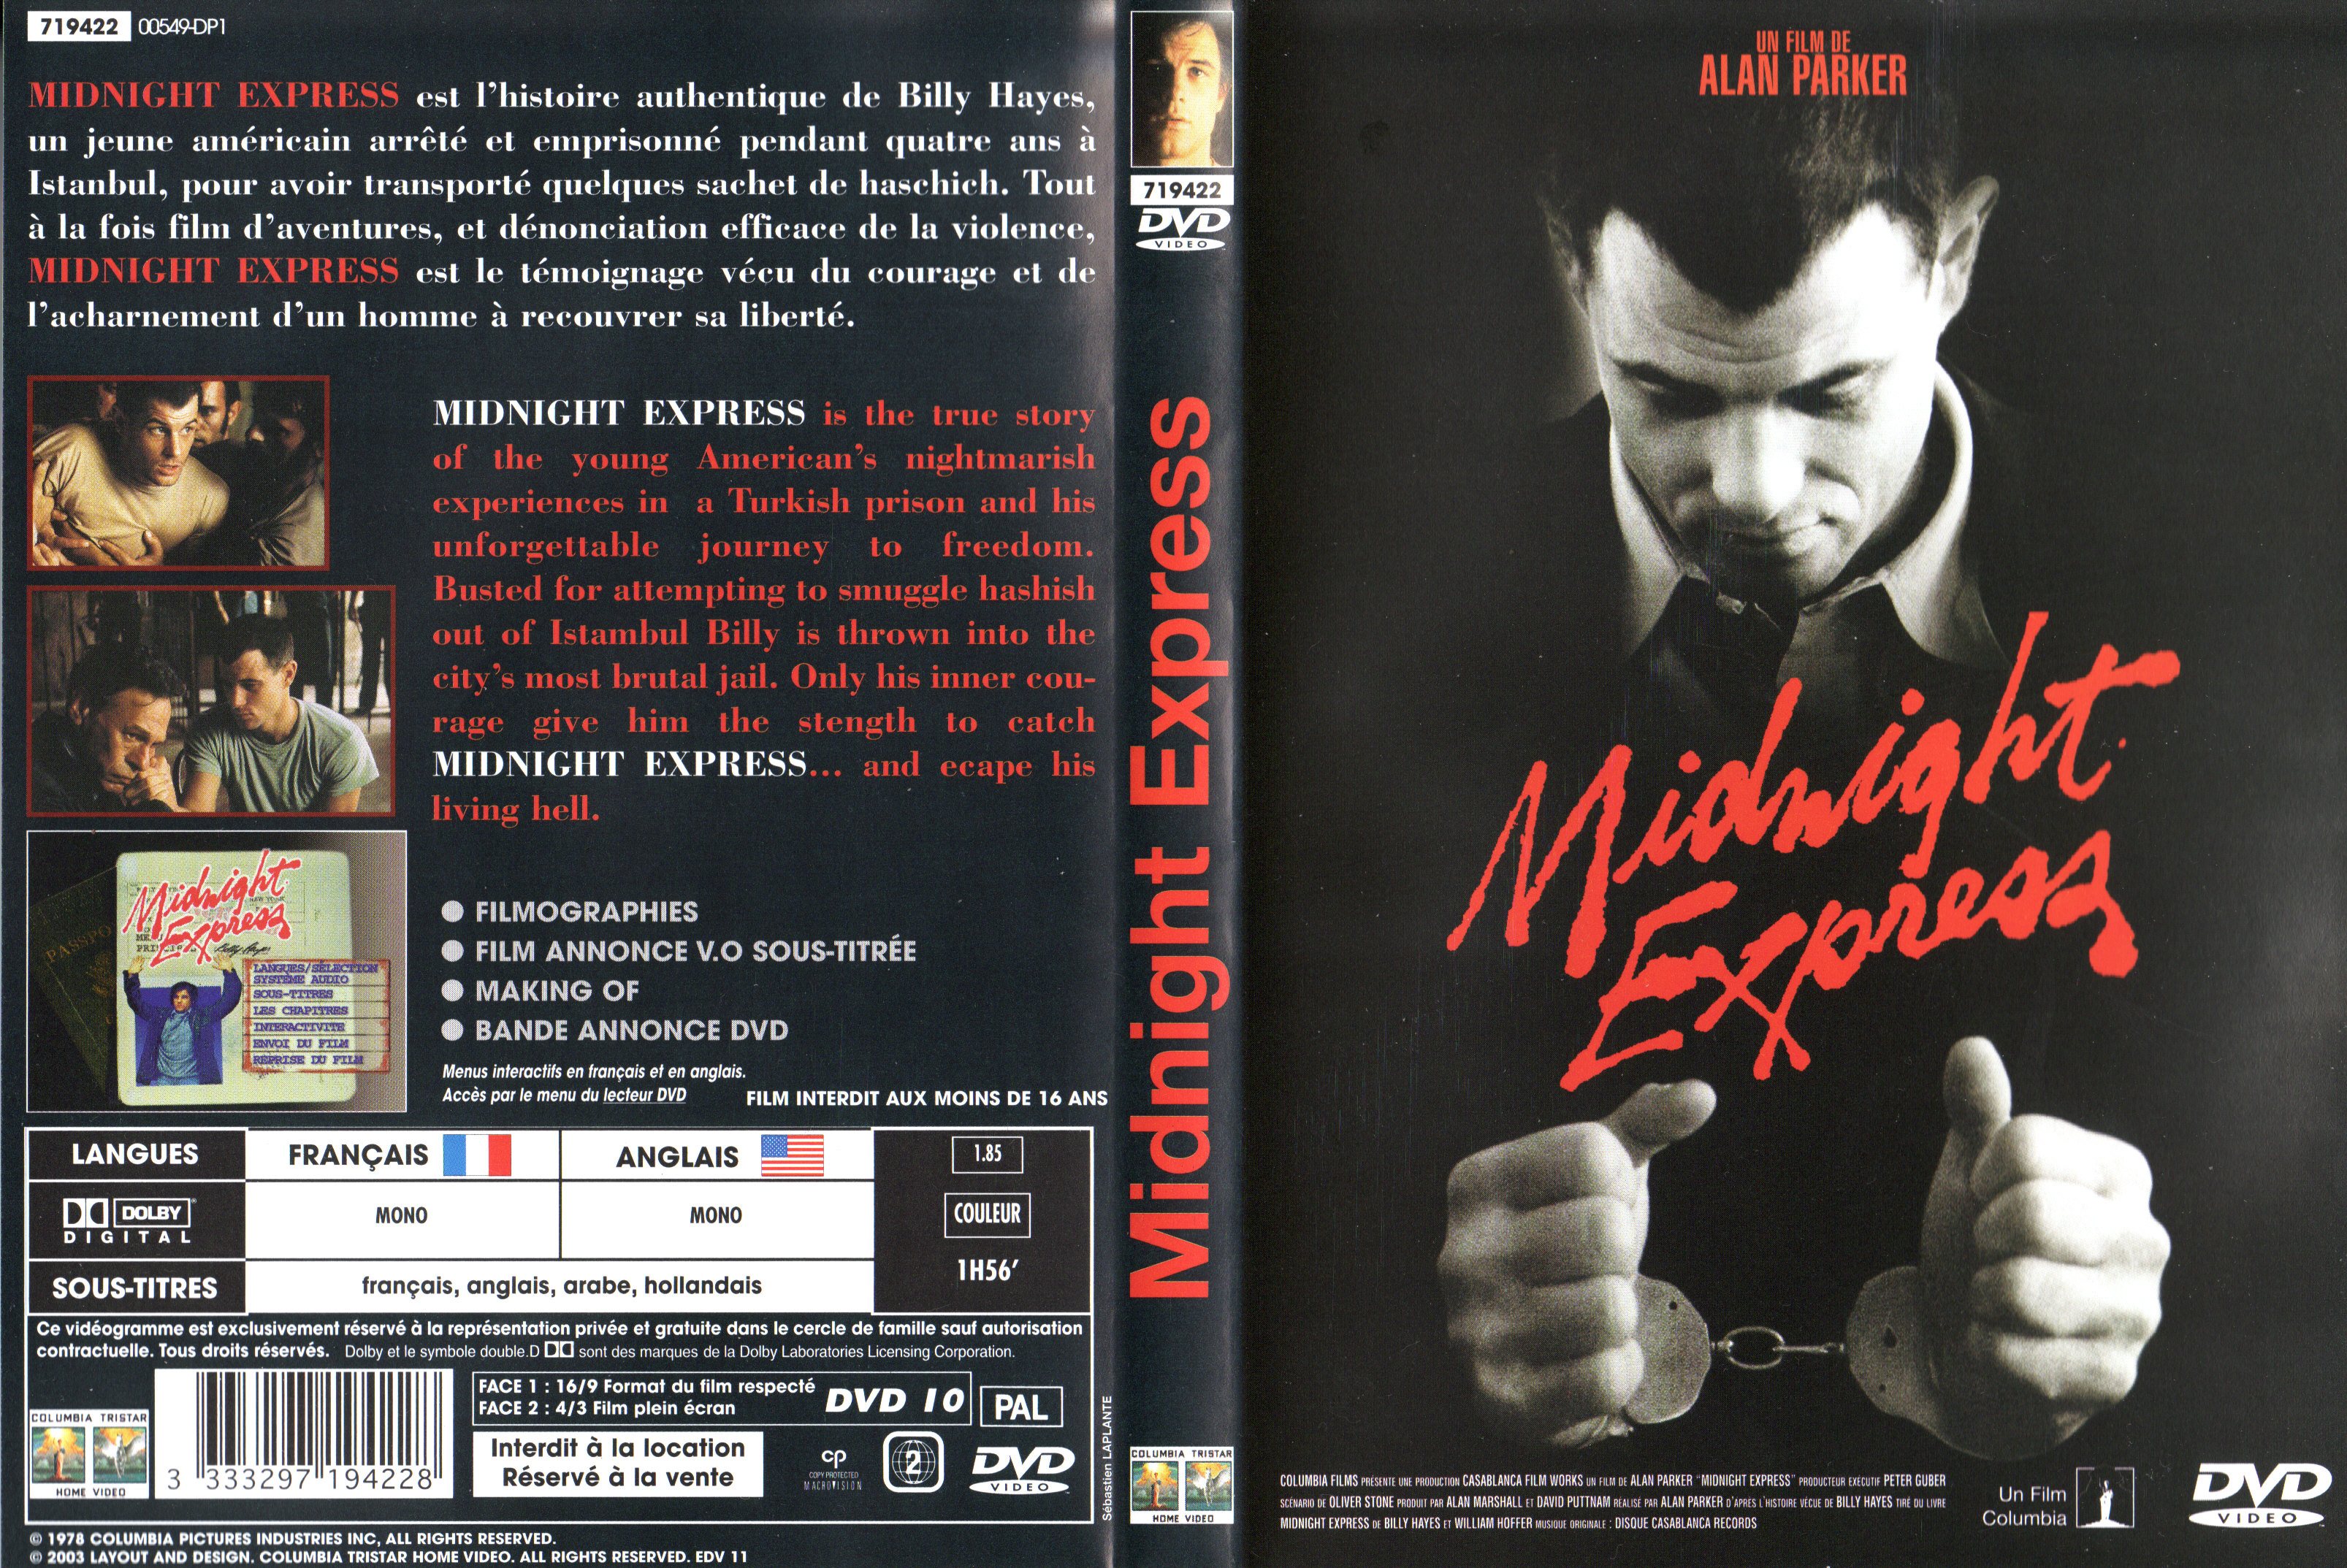 Jaquette DVD Midnight express